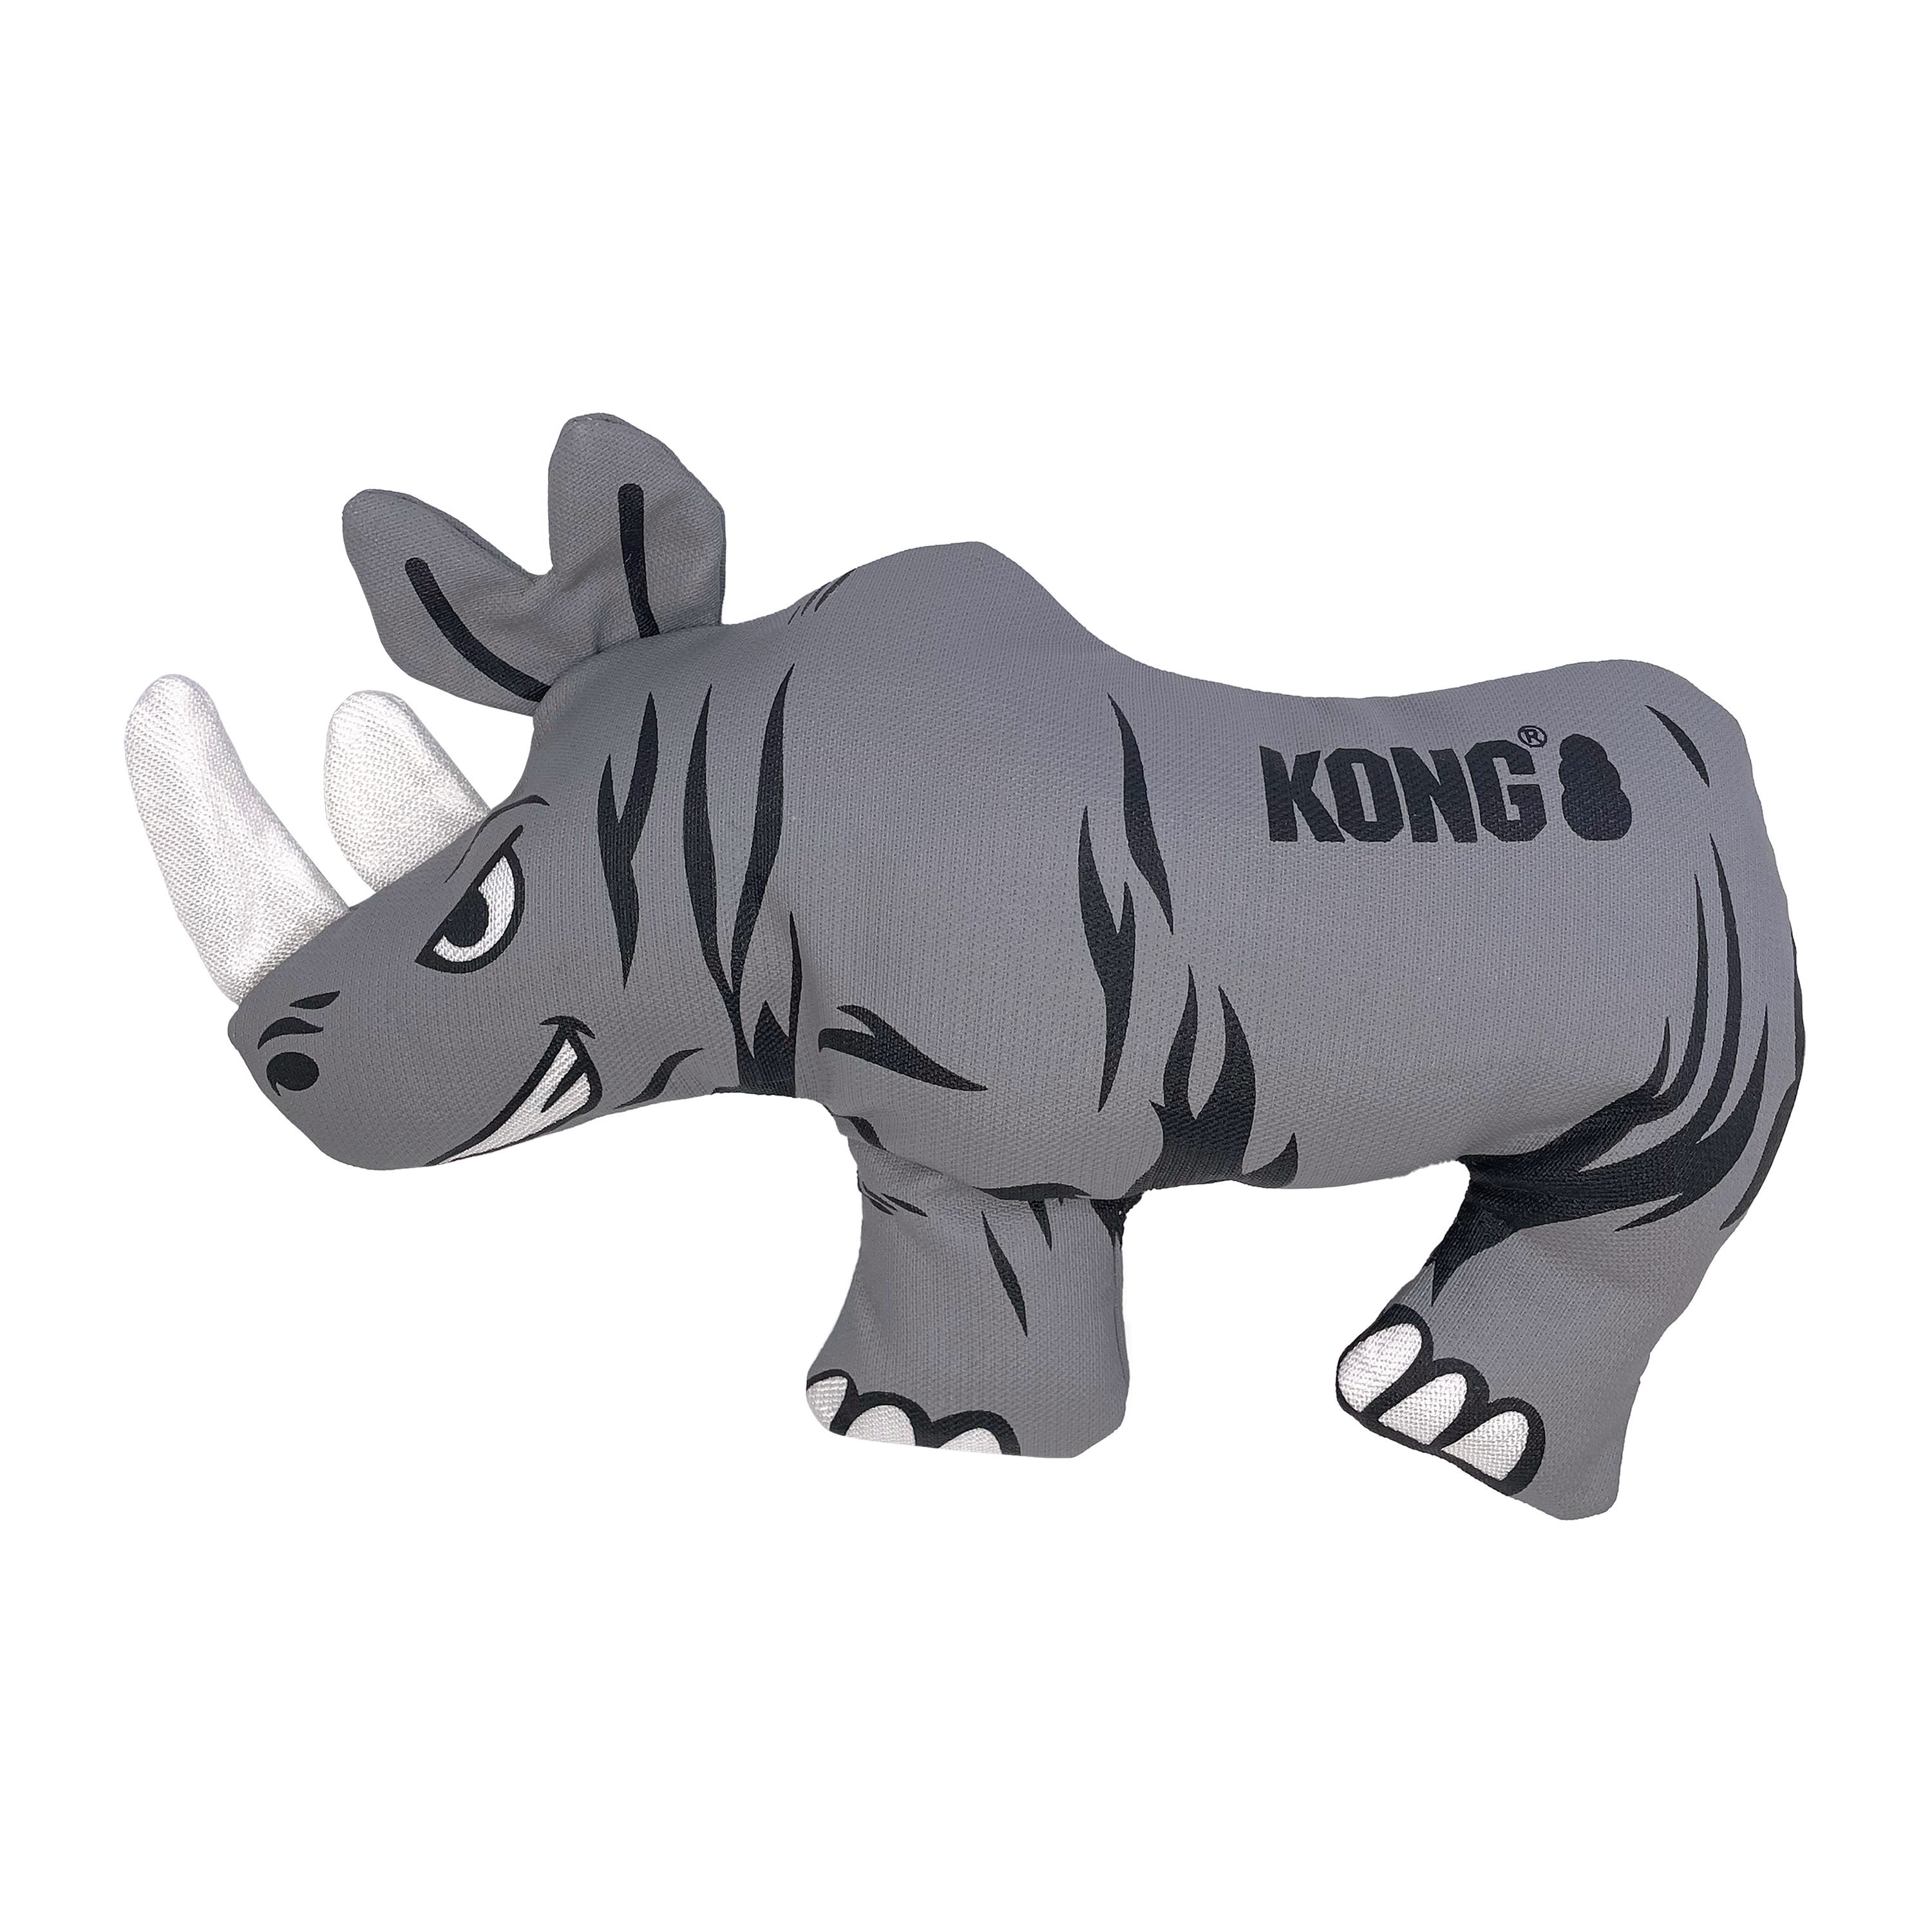 Maxx Rhino lifestyle product image